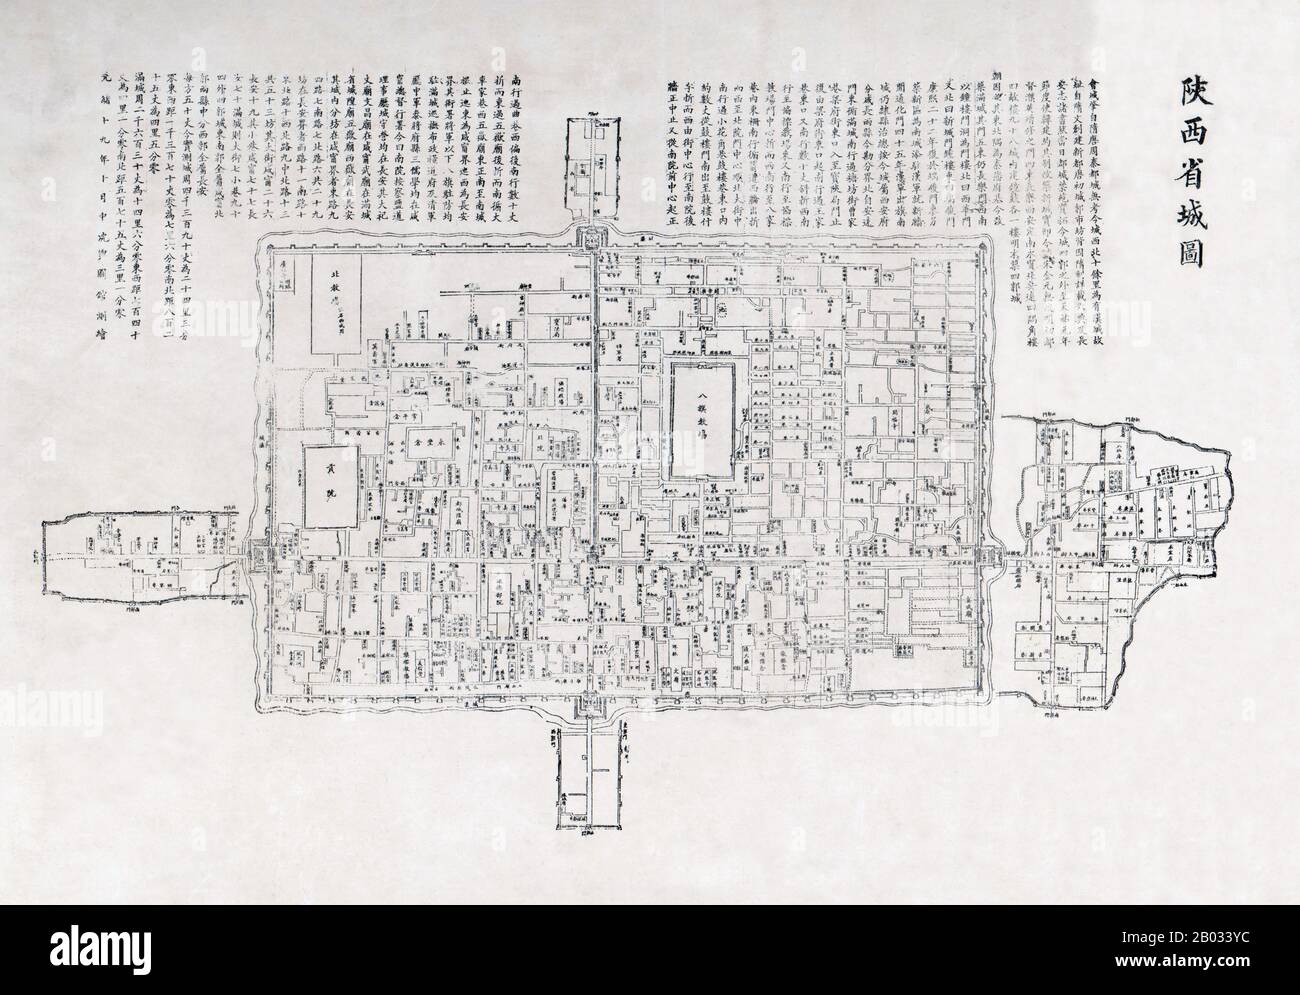 Der Bau der ersten Stadtmauer von Chang'an (ursprünglicher Name von Xi'an) begann in 194 v. Chr. und dauerte vier Jahre. Die bestehende Mauer wurde während der Ming-Dynastie im Jahre 1370 begonnen. Er umkreist eine viel kleinere Stadt mit 14 Quadratkilometer (5,4 sq mi). Die Mauer misst 13,7 Kilometer (8,5 Meilen) im Umfang, 12 Meter (39 Fuß) in der Höhe und 15-18 Meter (49-59 Fuß) in der Dicke an der Basis. XI'an ist die Hauptstadt der Provinz Shaanxi und eine subprovinzielle Stadt in der Volksrepublik China. Eine der ältesten Städte Chinas mit mehr als 3.100 Jahren Geschichte war die Stadt unter dem Namen Chang' bekannt. Stockfoto